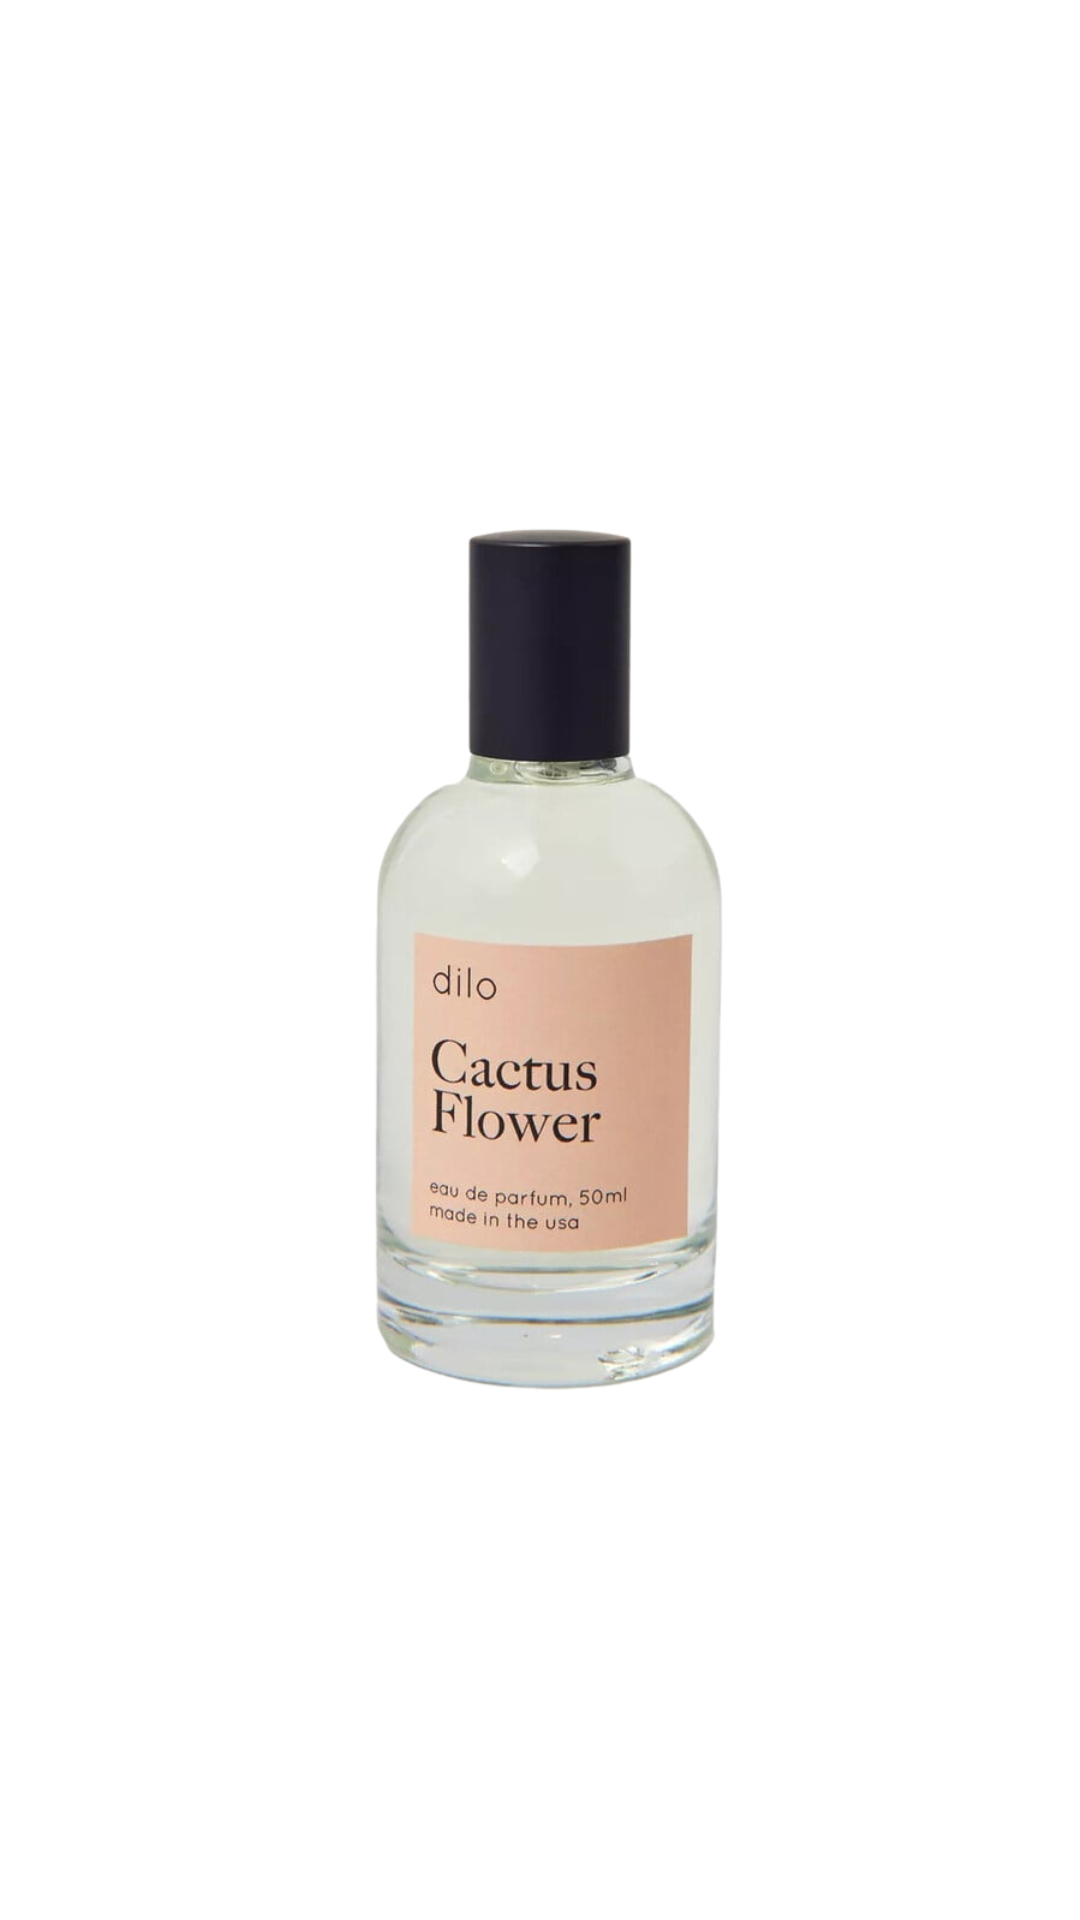 Dilo - Cactus Flower 50ml parfum